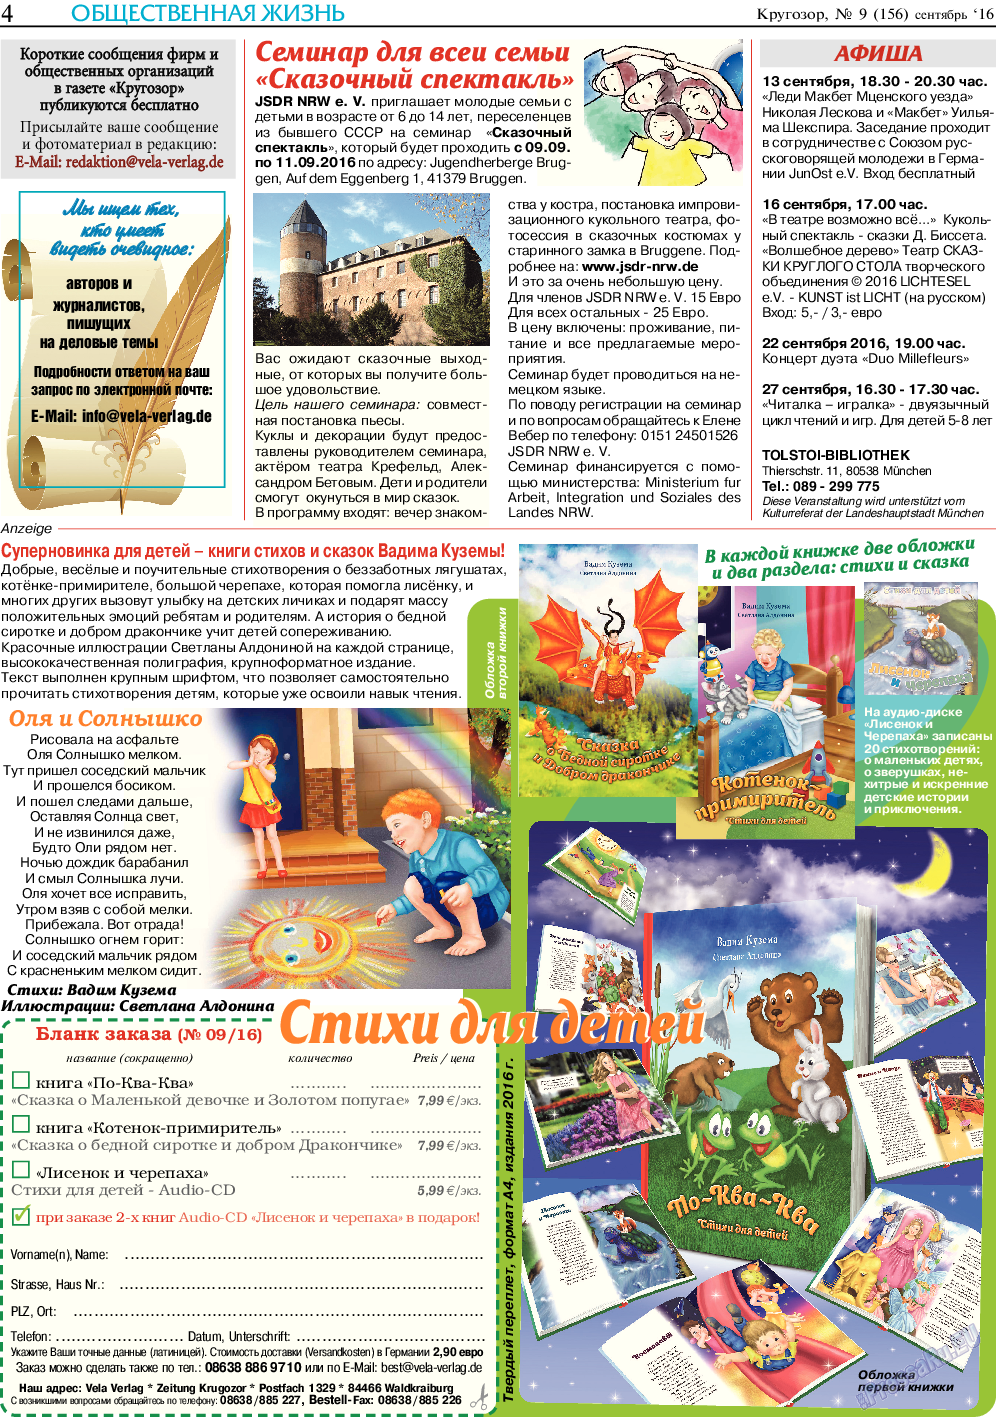 Кругозор, газета. 2016 №9 стр.4